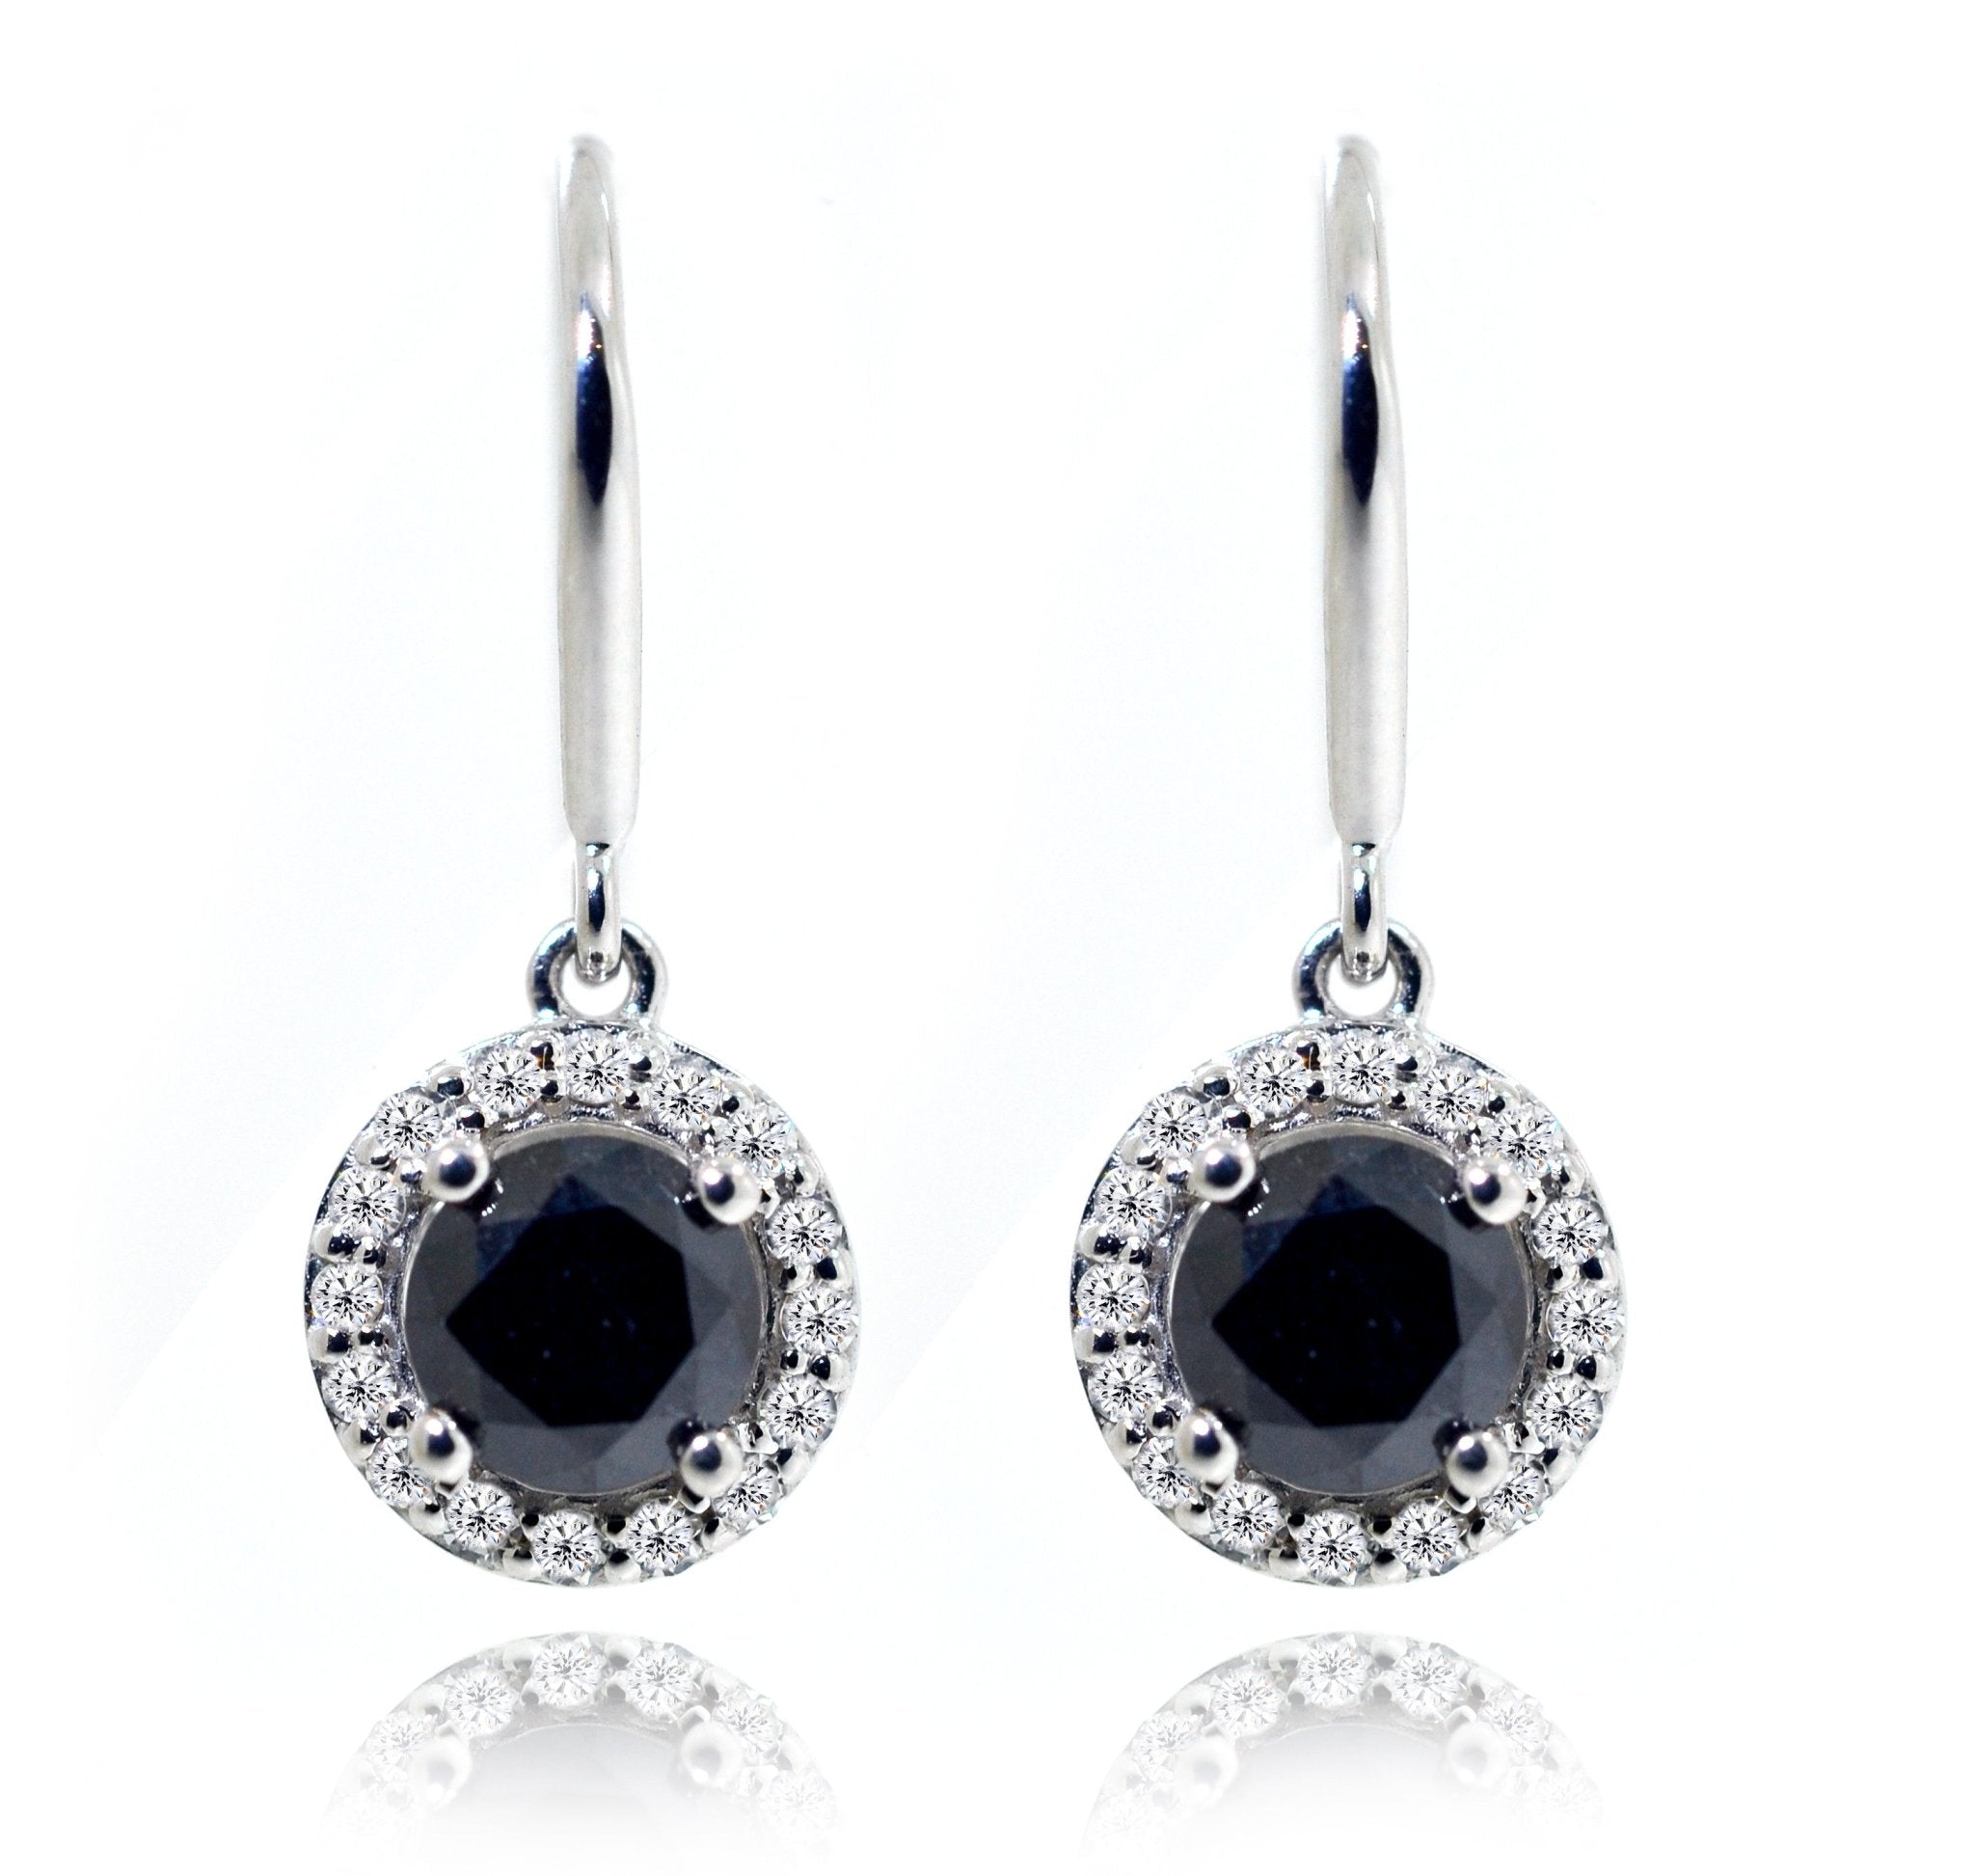 9ct White Gold Halo black & White Diamond Earrings - ForeverJewels Design Studio 8